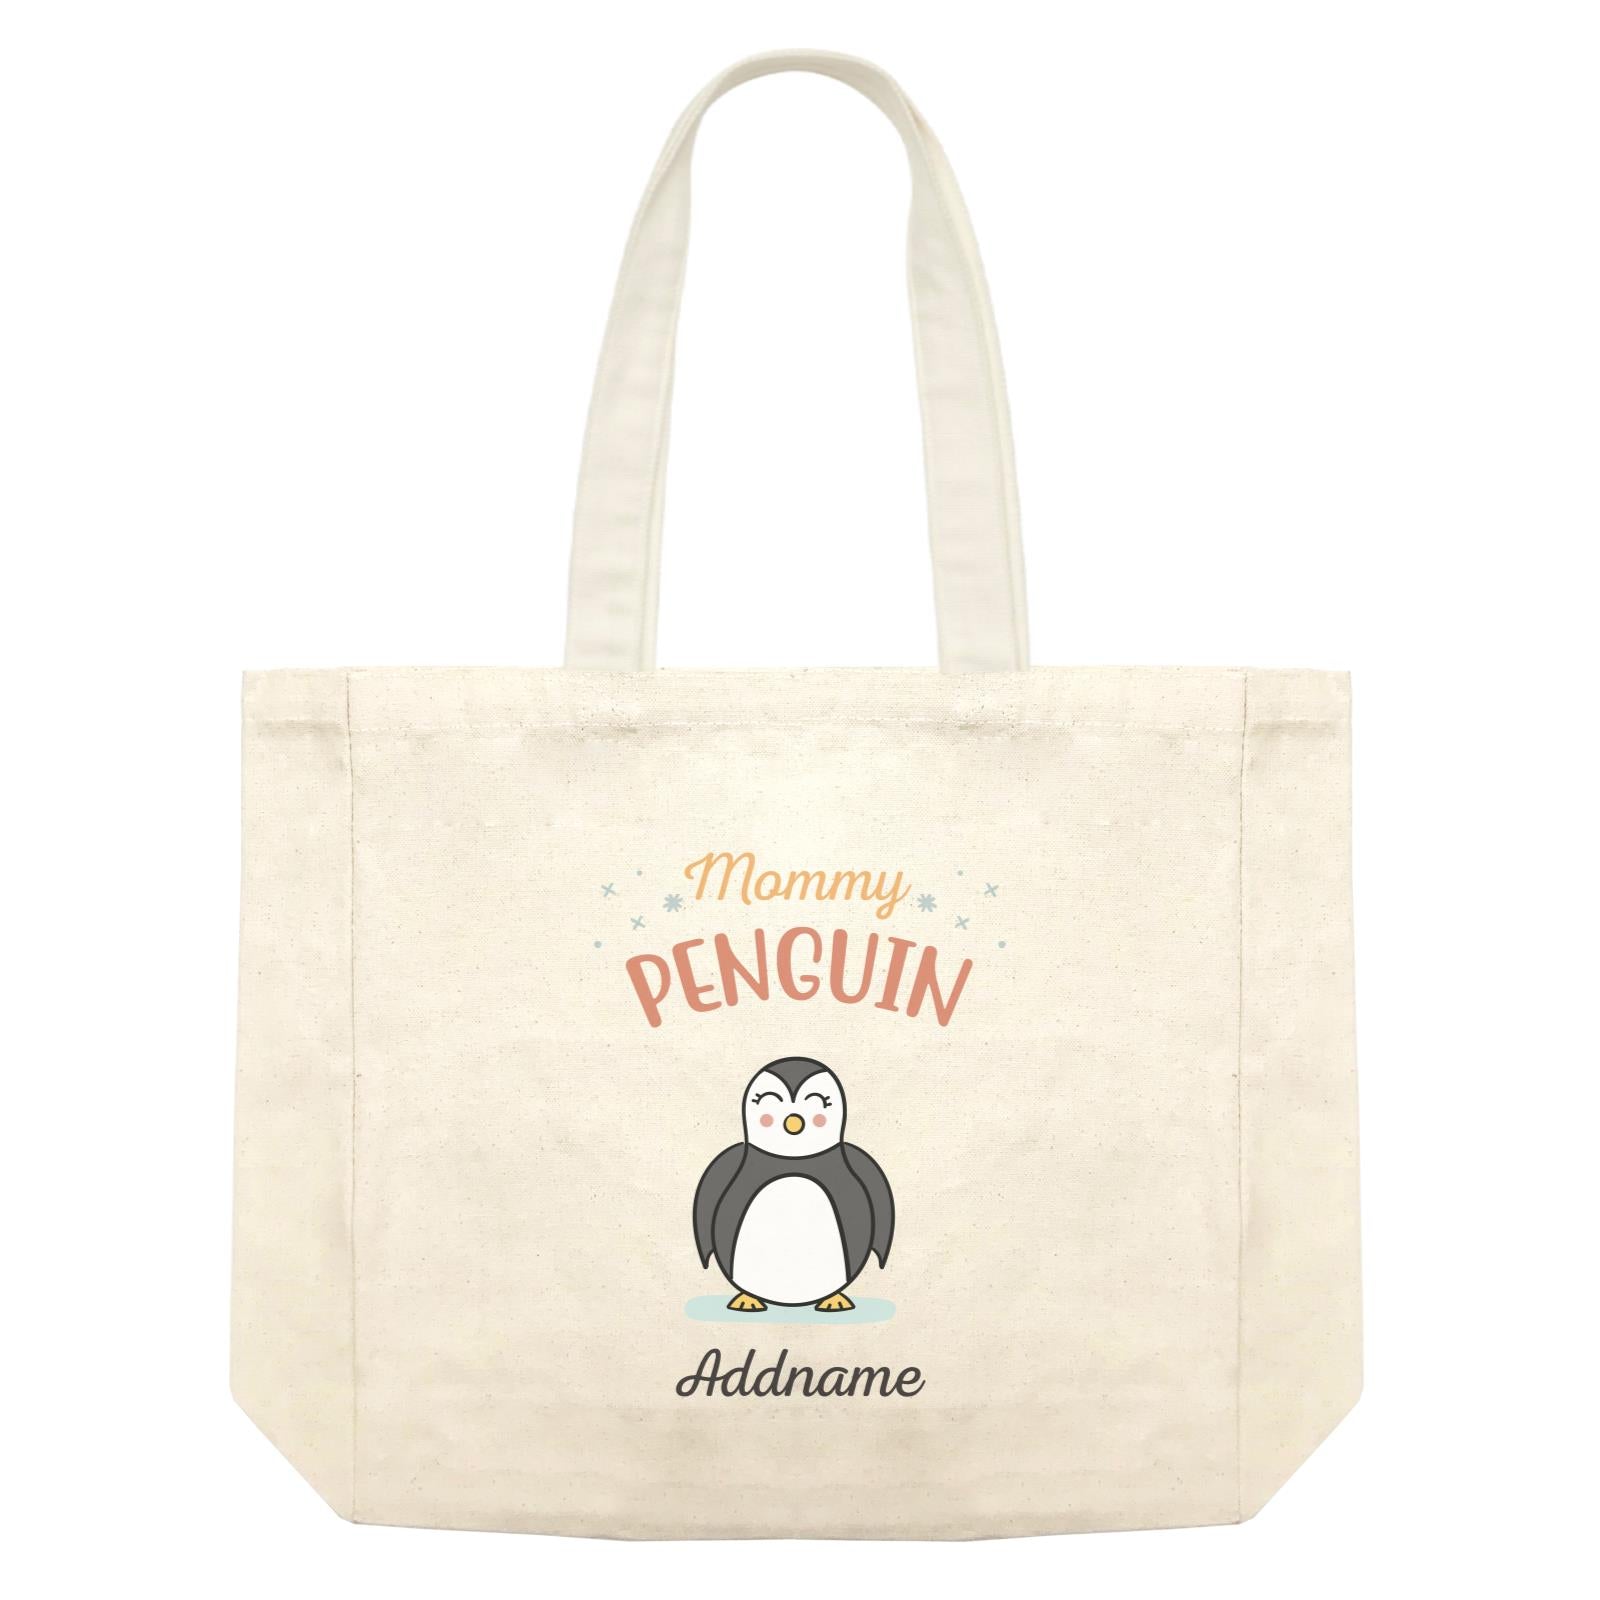 Penguin Family Mommy Penguin Addname Shopping Bag